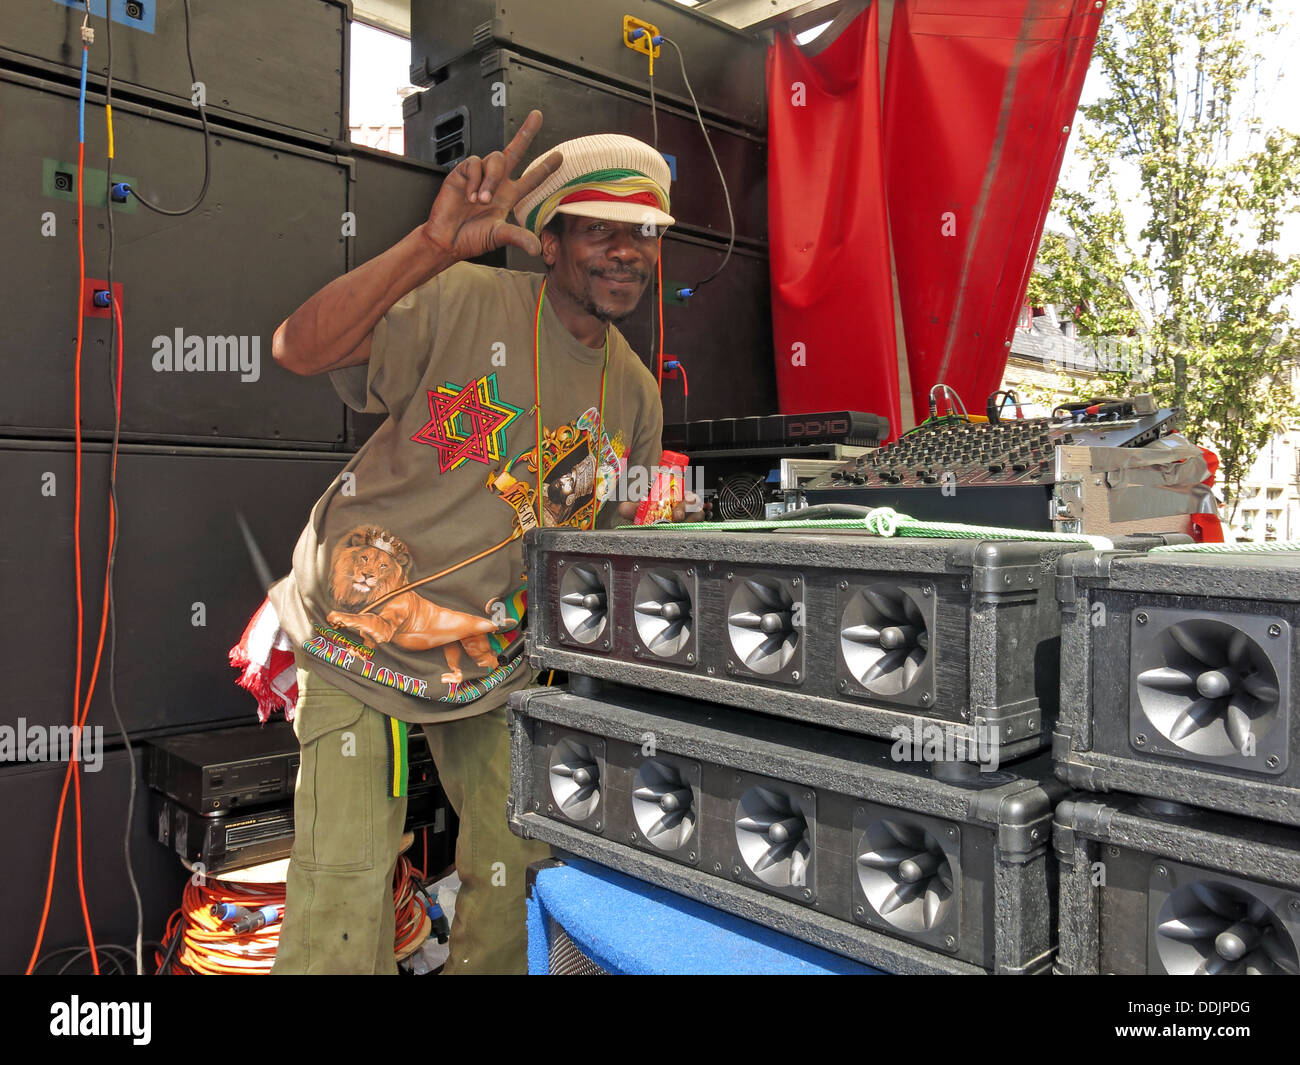 L'homme sonore de Huddersfield Carnival parade 2013 fête de rue Africains des Caraïbes Banque D'Images